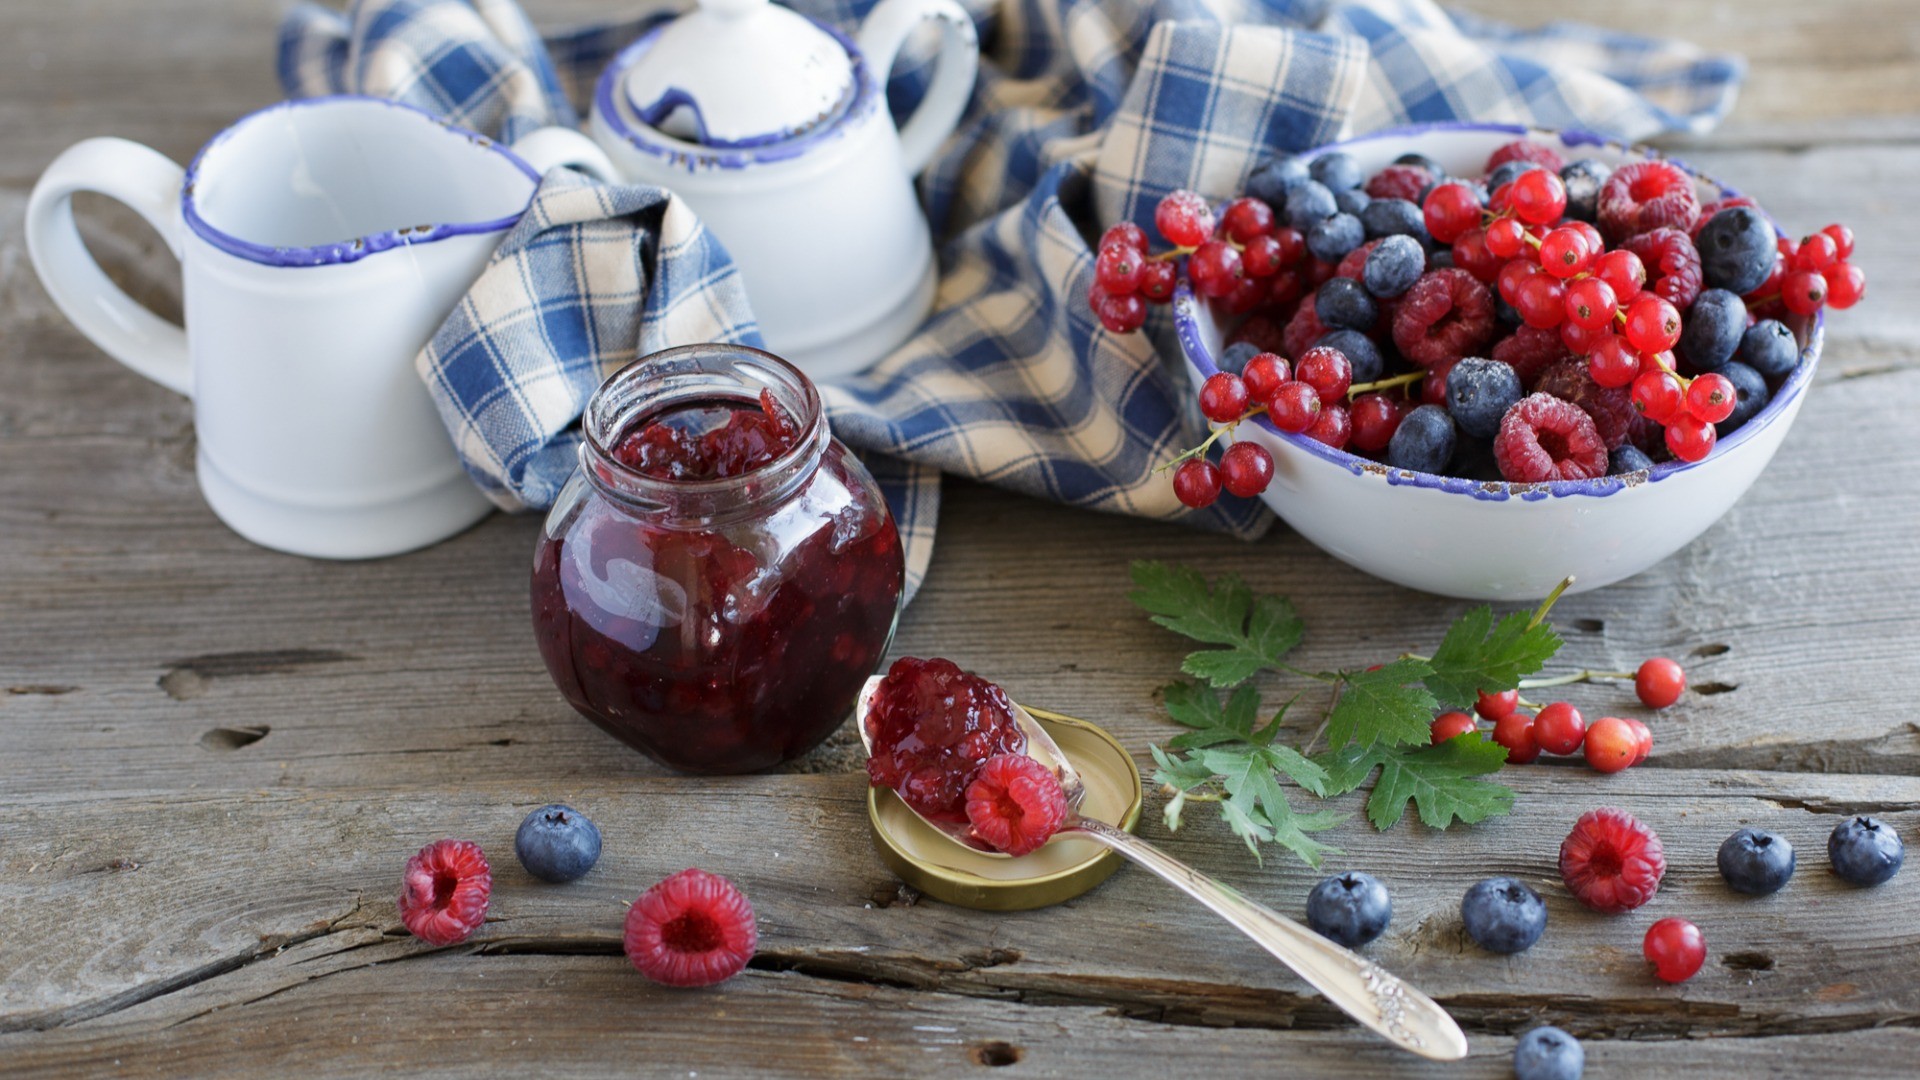 General 1920x1080 blueberries raspberries fruit red currant food marmalade berries spoon